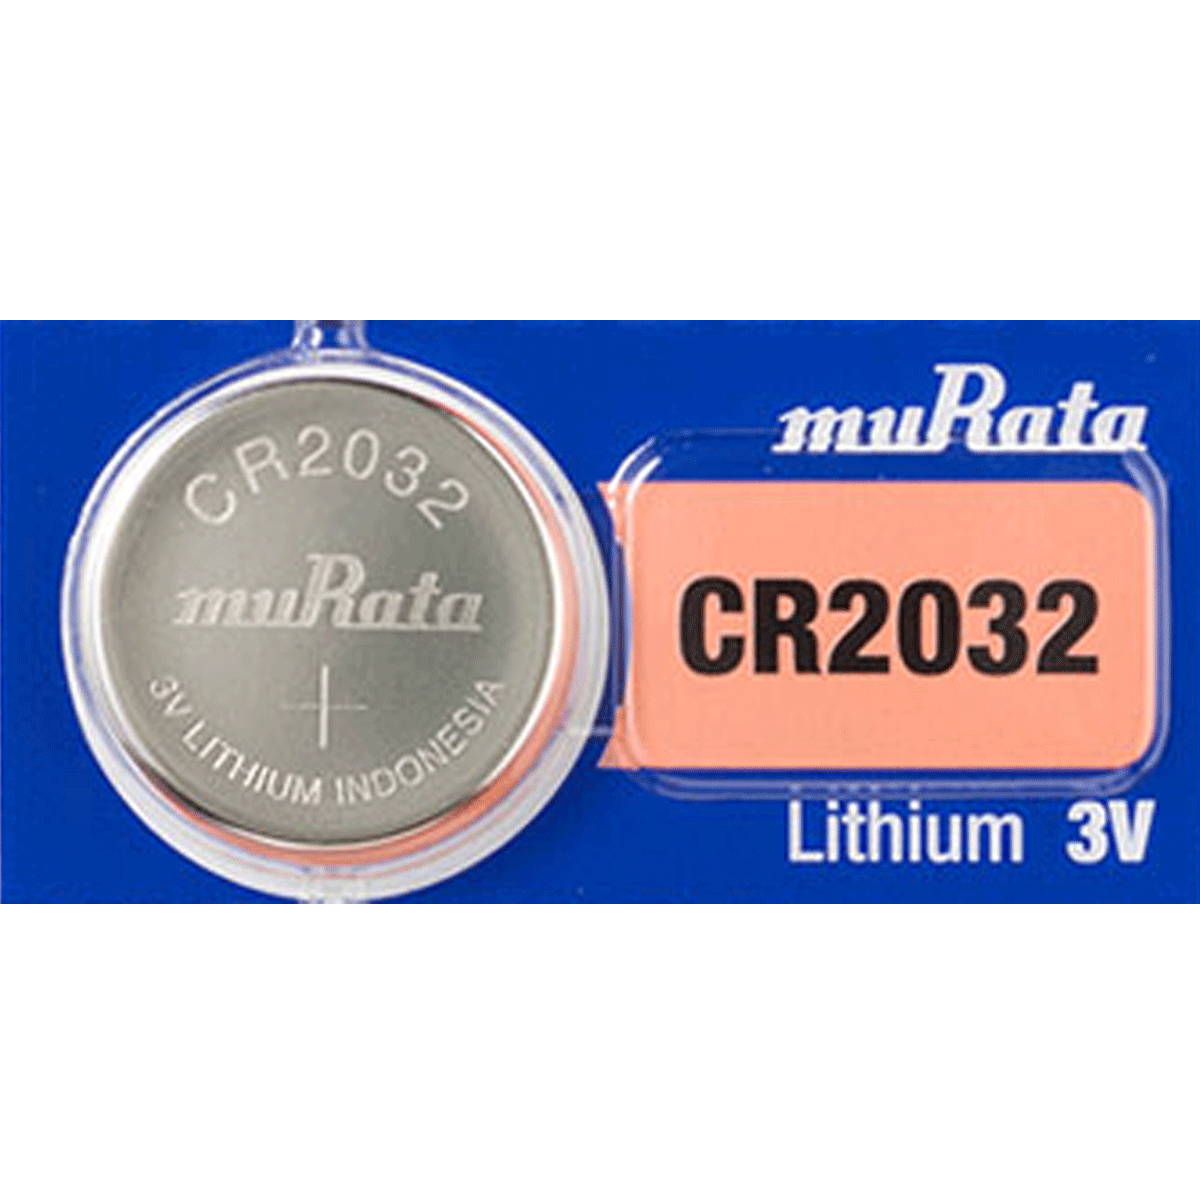 MURATA PILA CR2032 3V LITHIUM